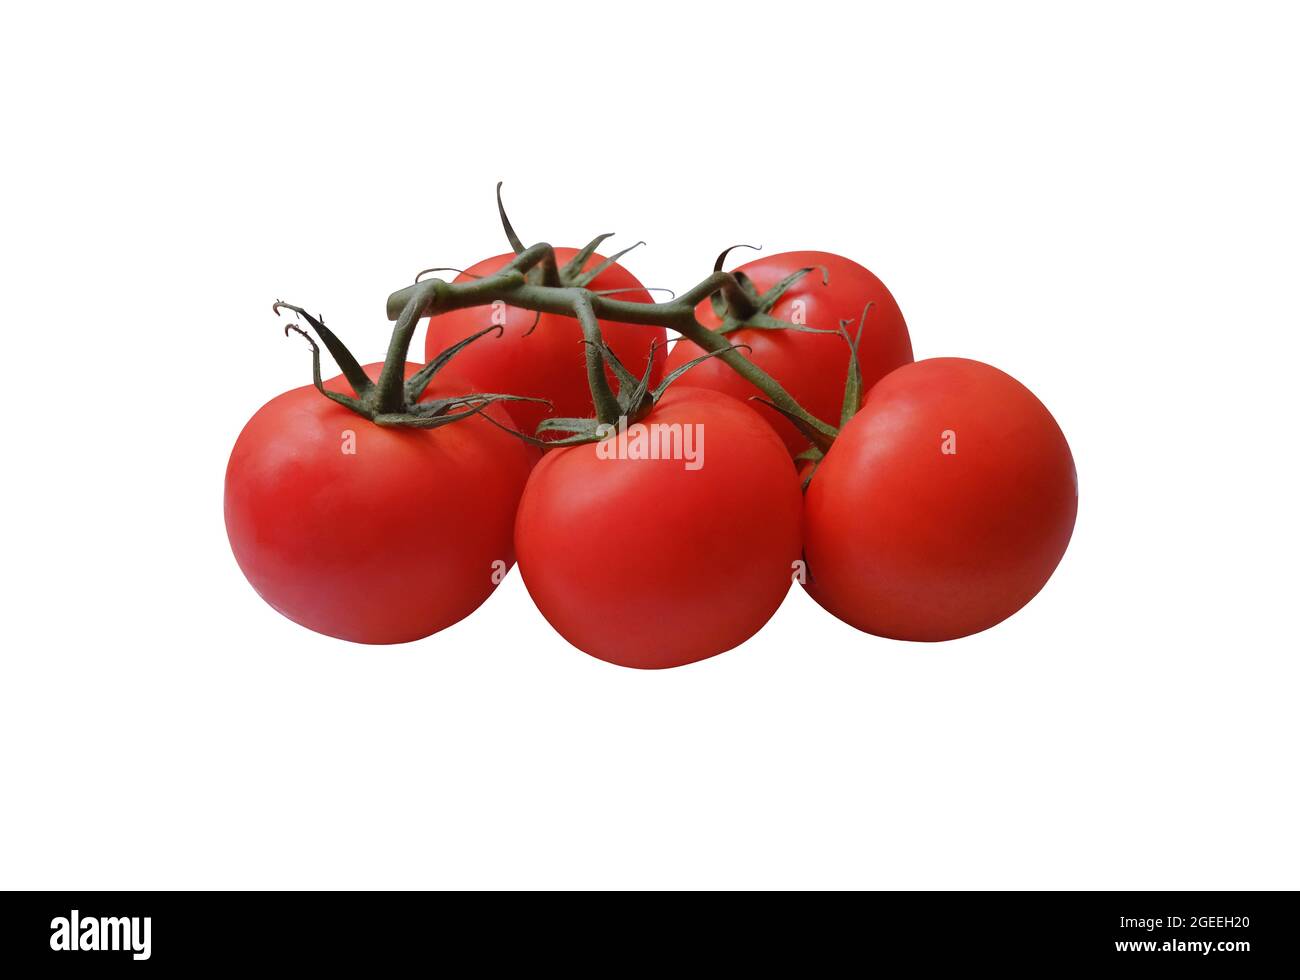 Pomodori rossi maturi ramo con gambo verde e foglie, ritaglio oggetto percorso di taglio, vegetale biologico sano dieta concetto Foto Stock